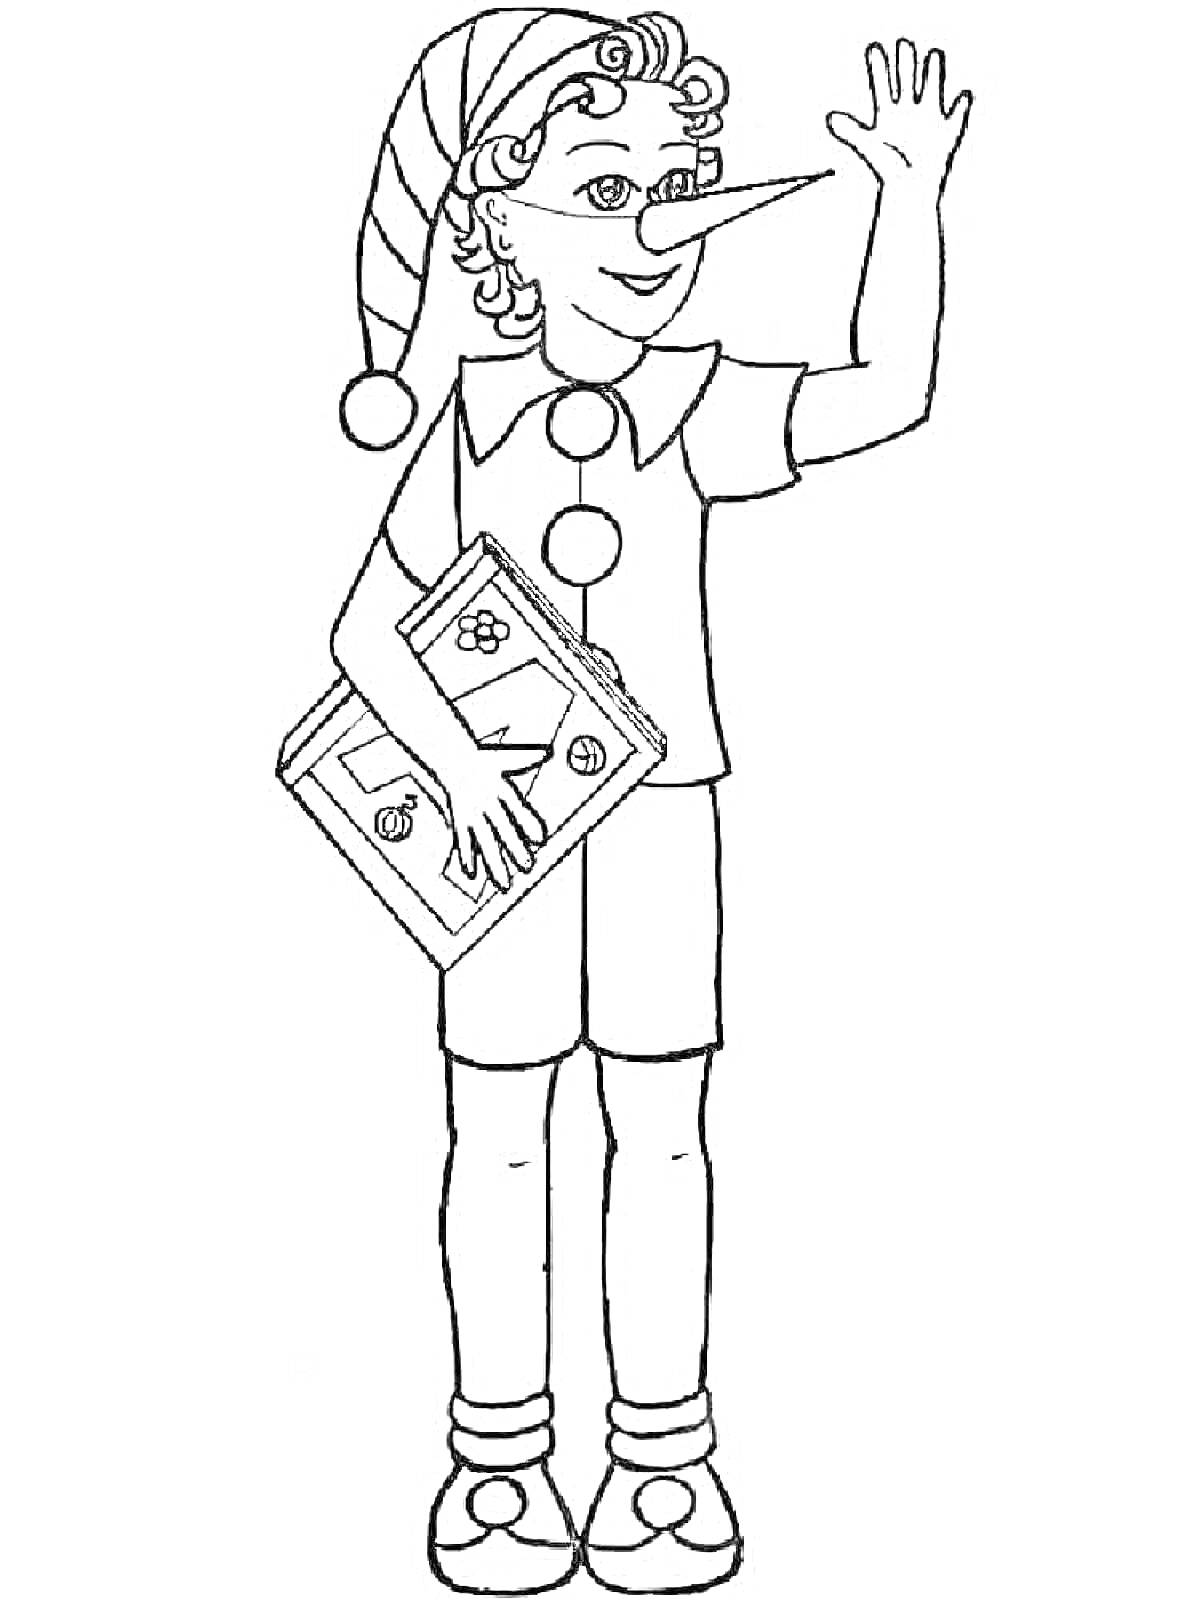 Раскраска Буратино в колпаке с книгой, поднимает руку